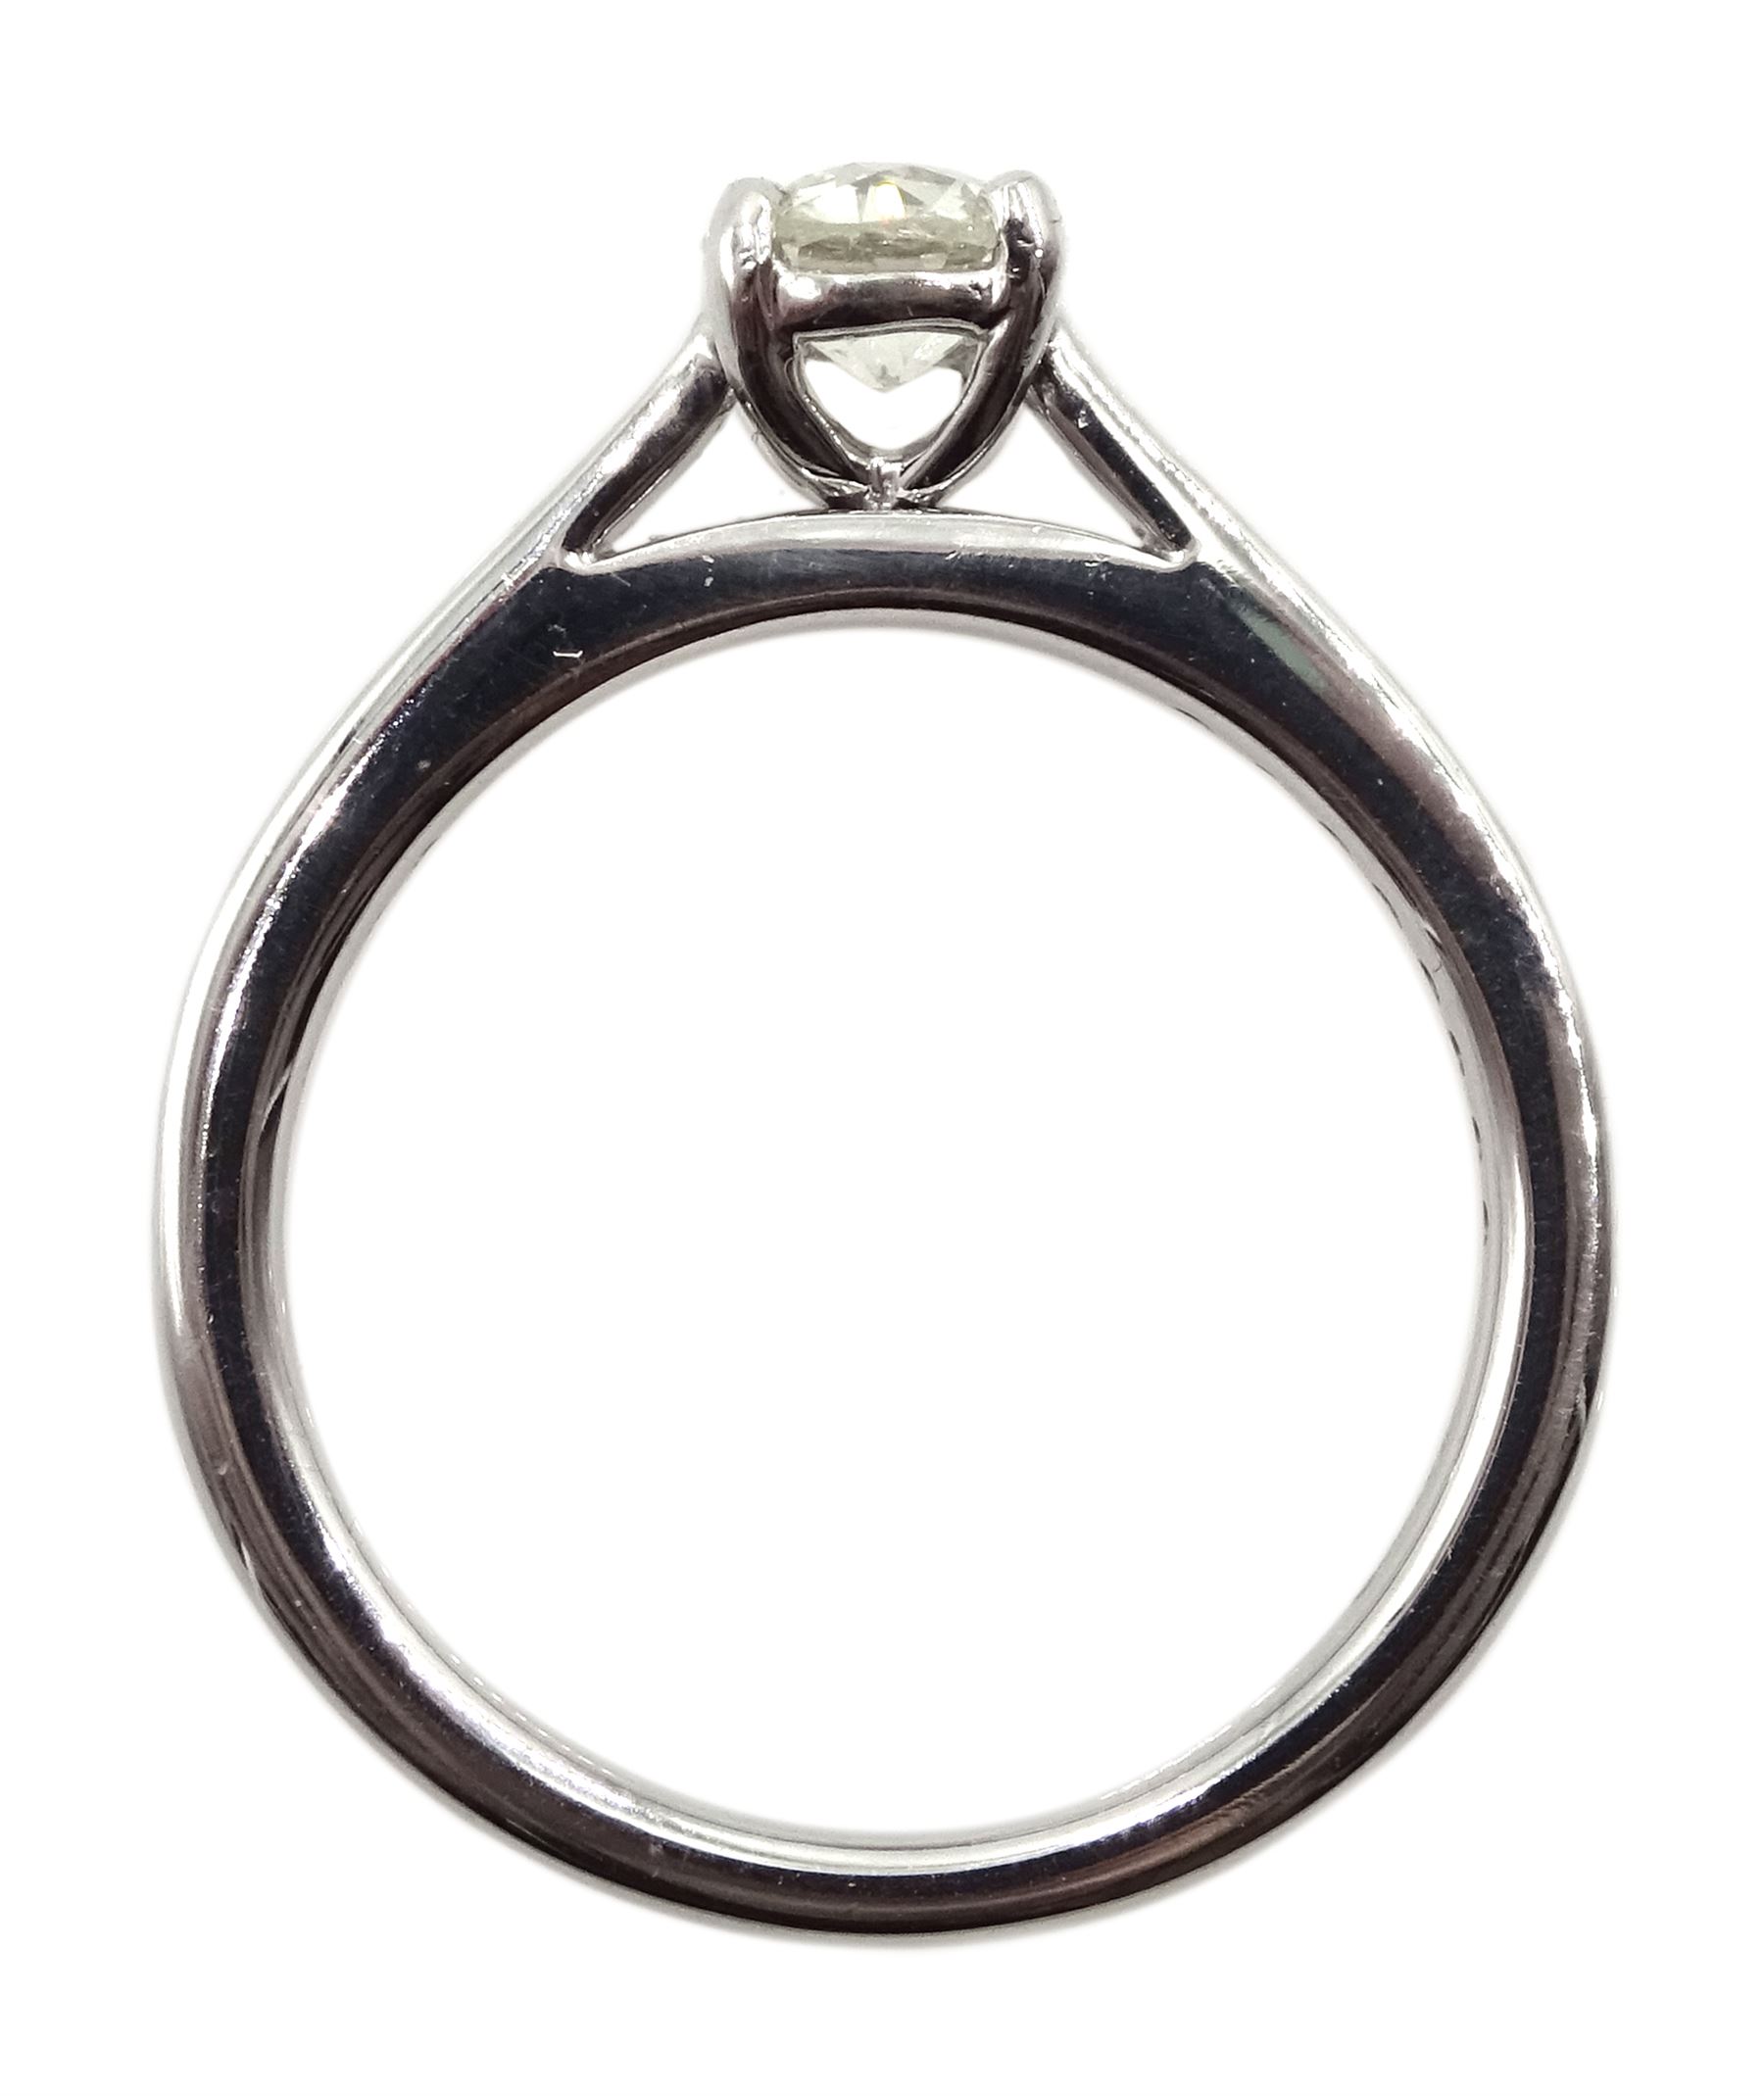 Platinum single stone diamond ring - Image 4 of 4